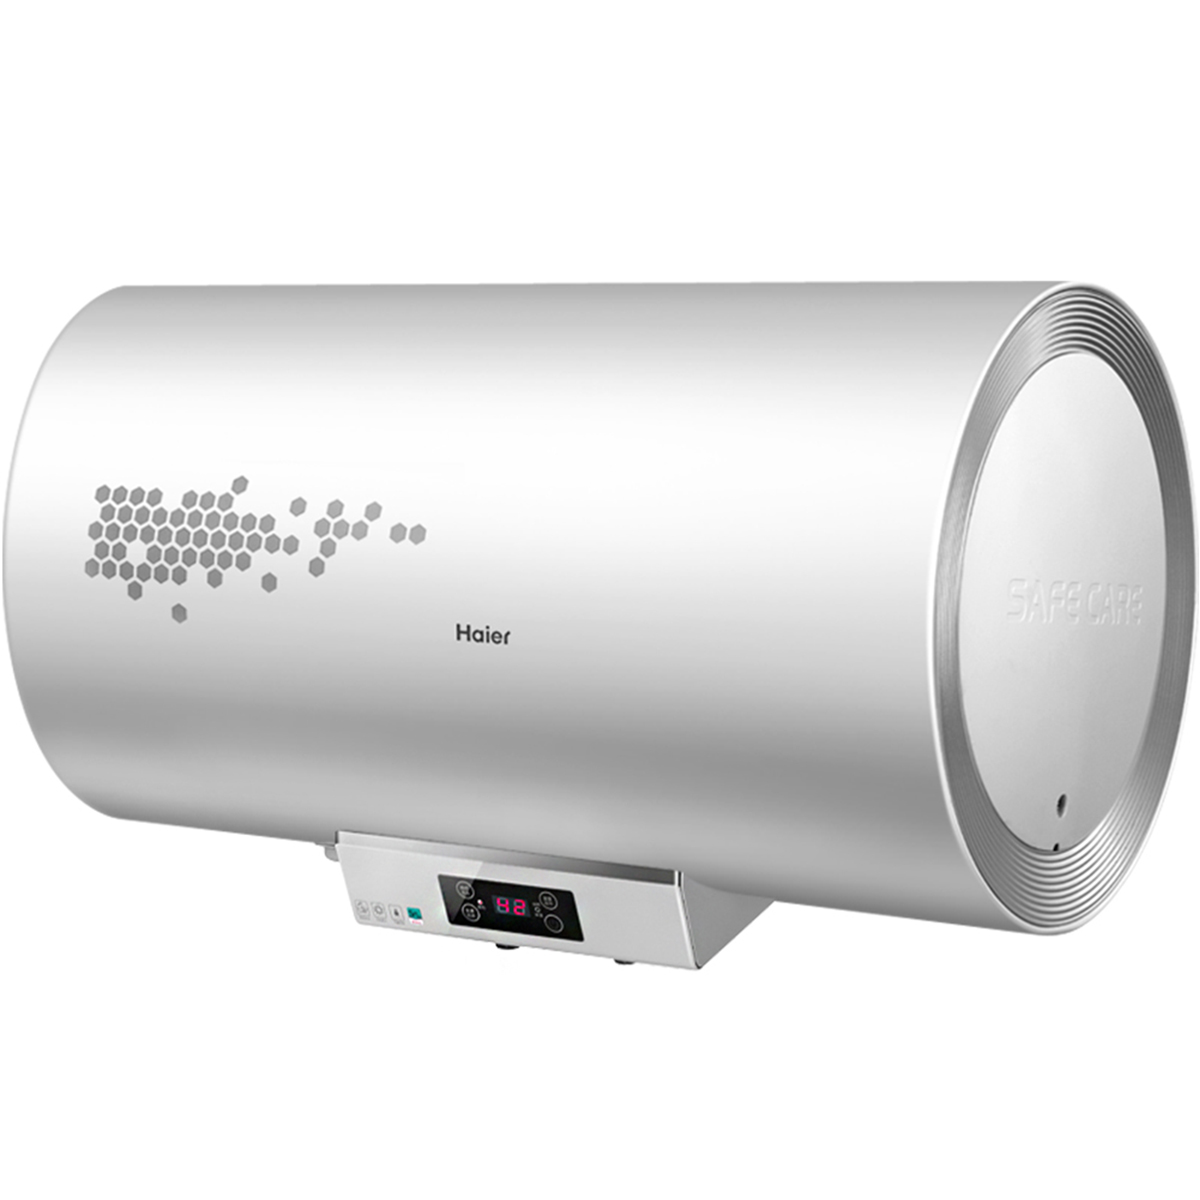 储水式电热水器如何安装—储水式电热水器安装方法 - 舒适100网